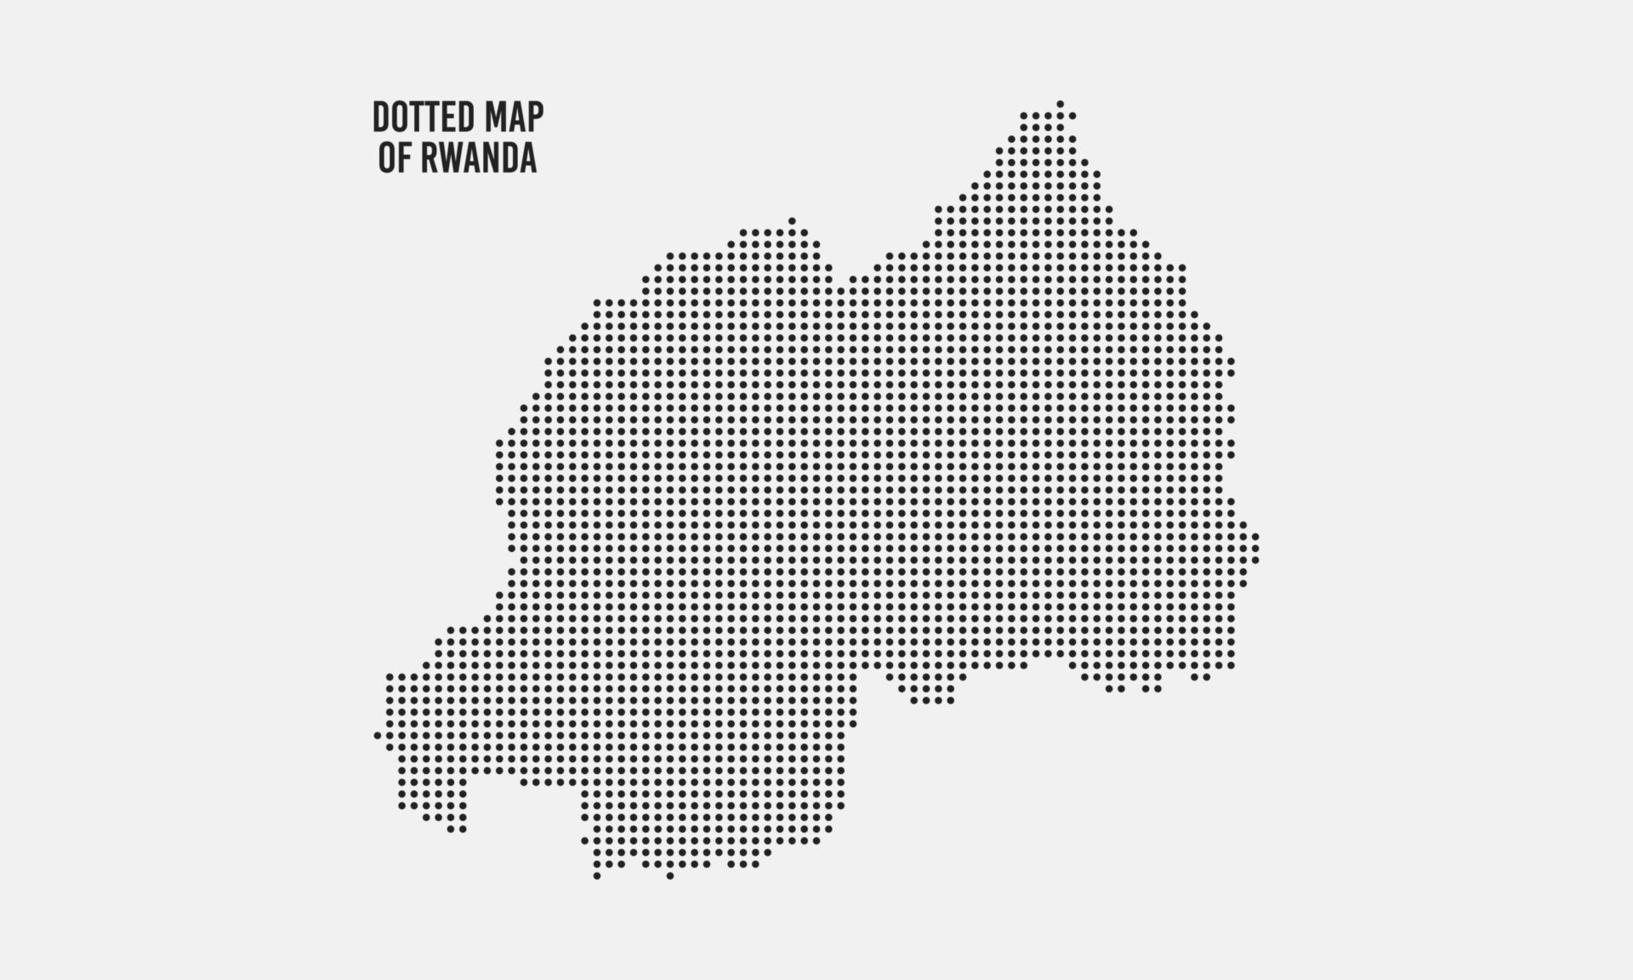 abstrakt prickad rwanda Karta vektor